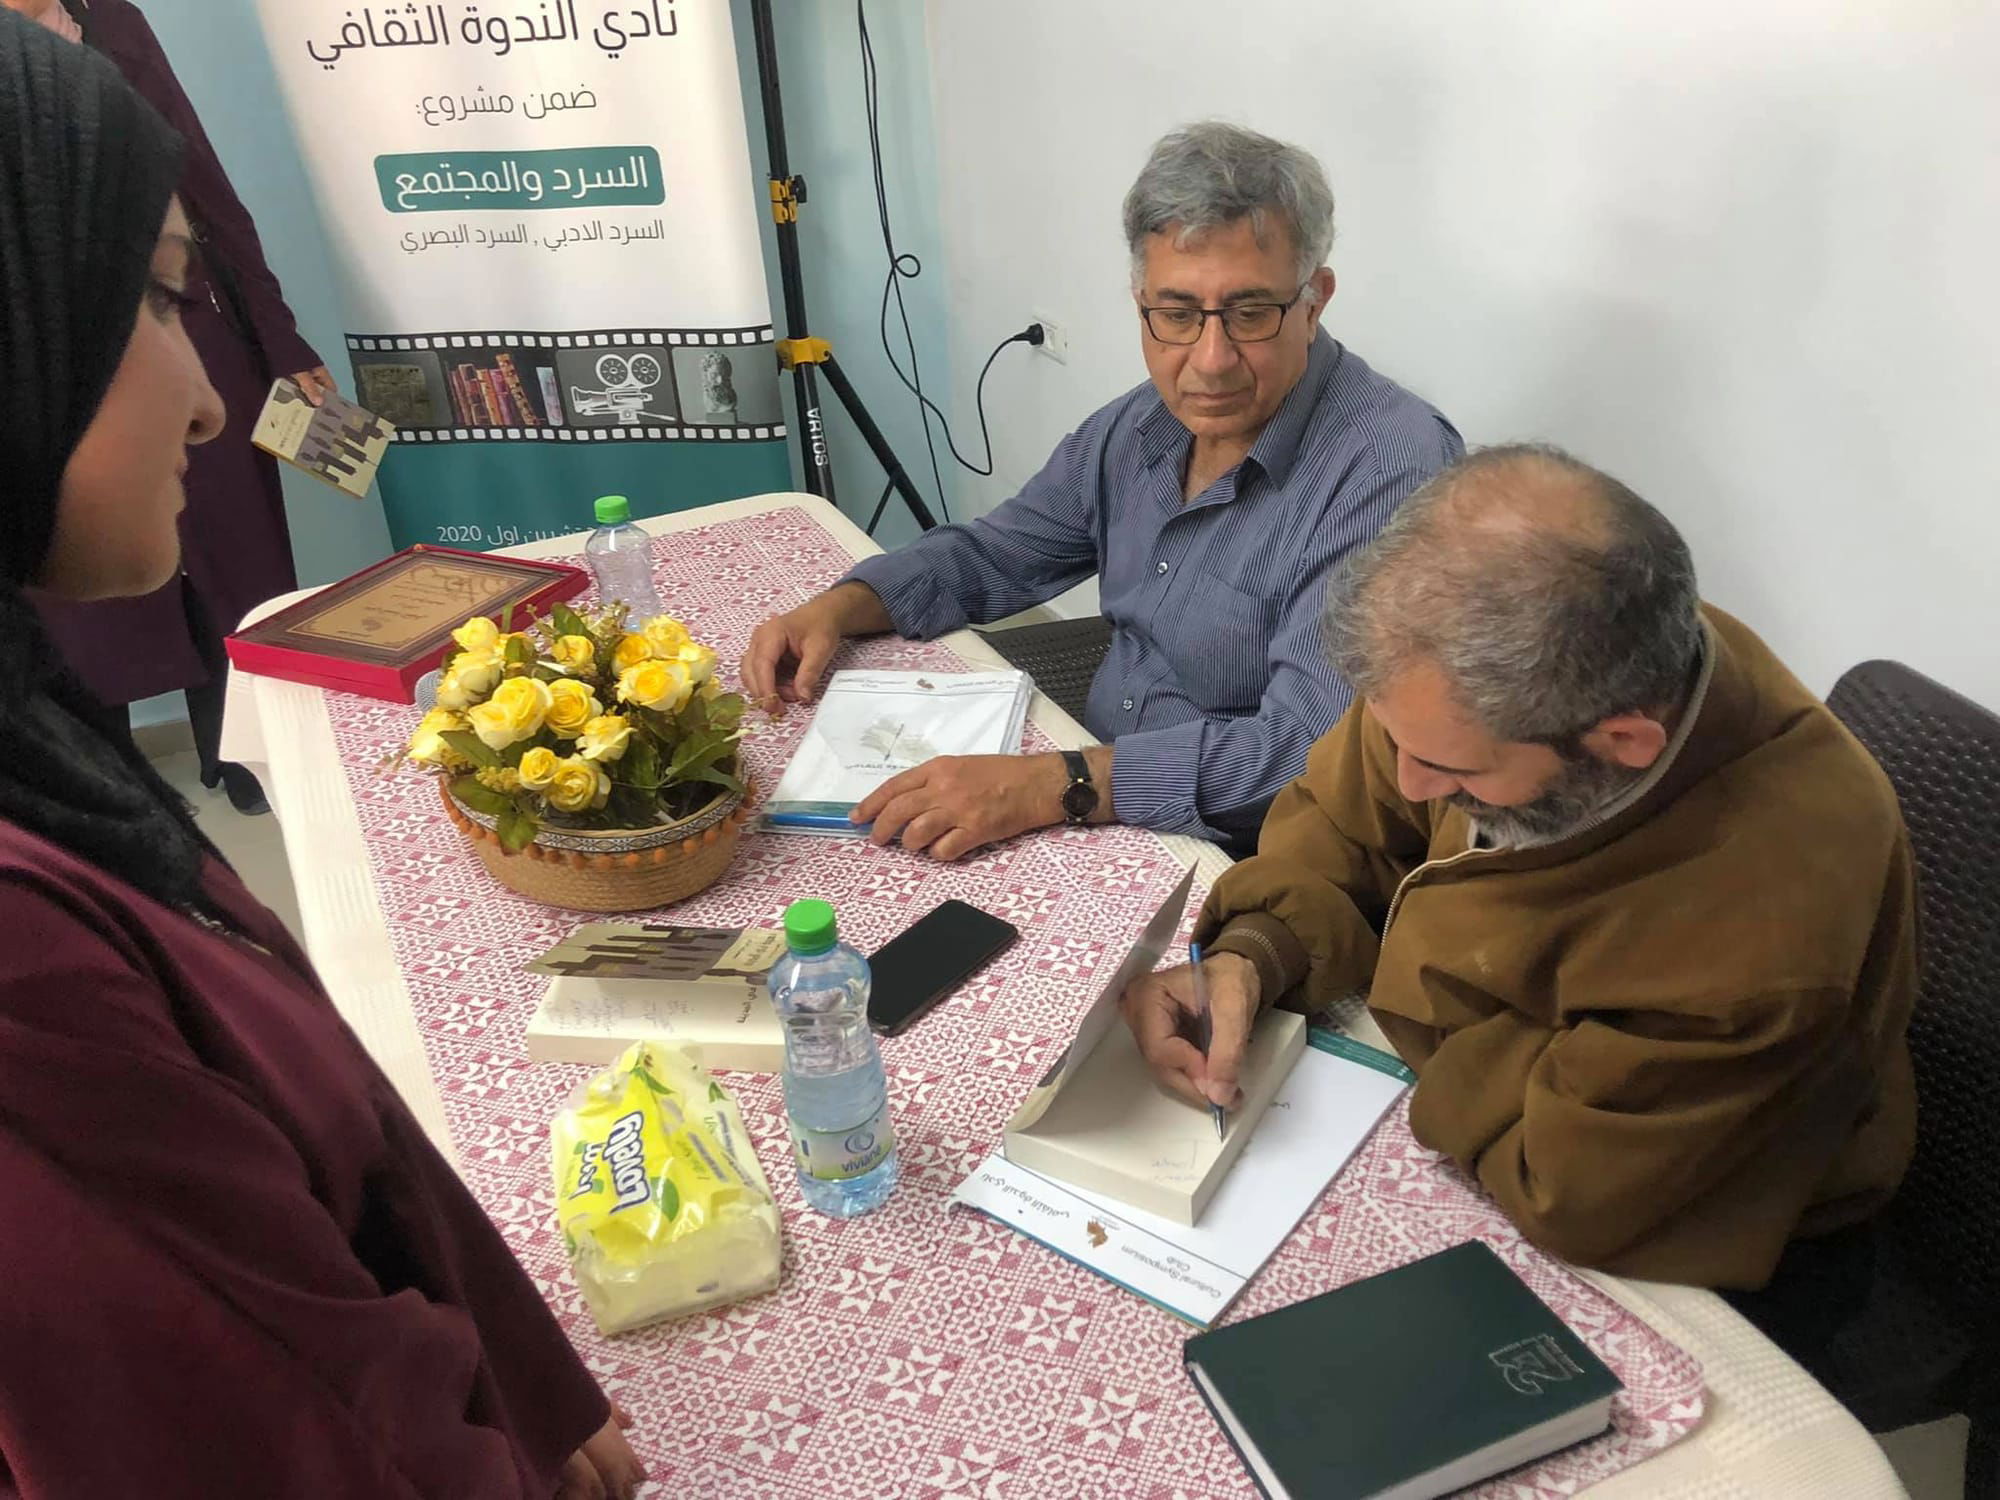 توقيع وإطلاق كتاب " نسوة في المدينة" لفراس حج محمد